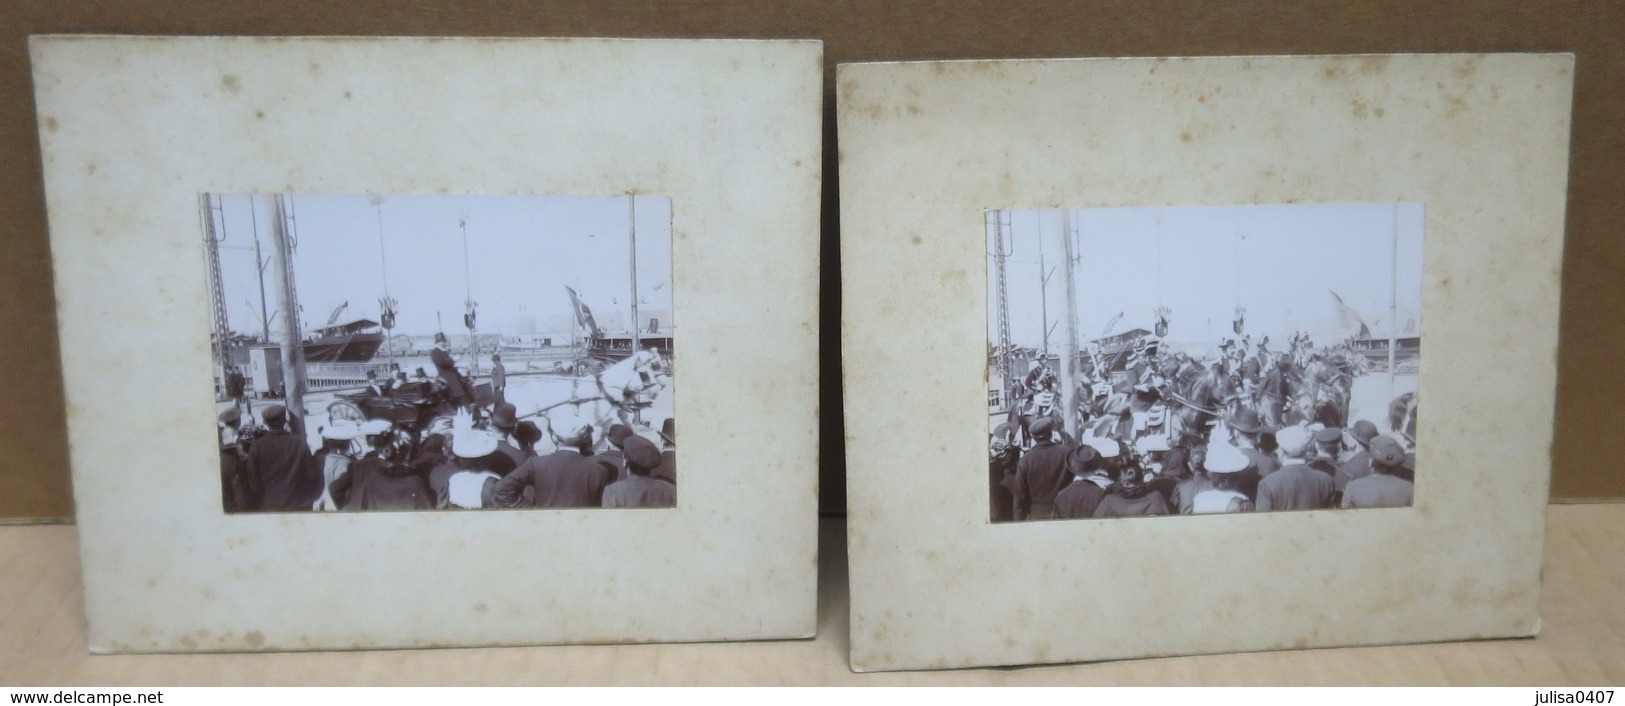 DUNKERQUE (59) Deux Anciennes Photographies Président Félix Faure De Retour De Russie 1897 - Dunkerque